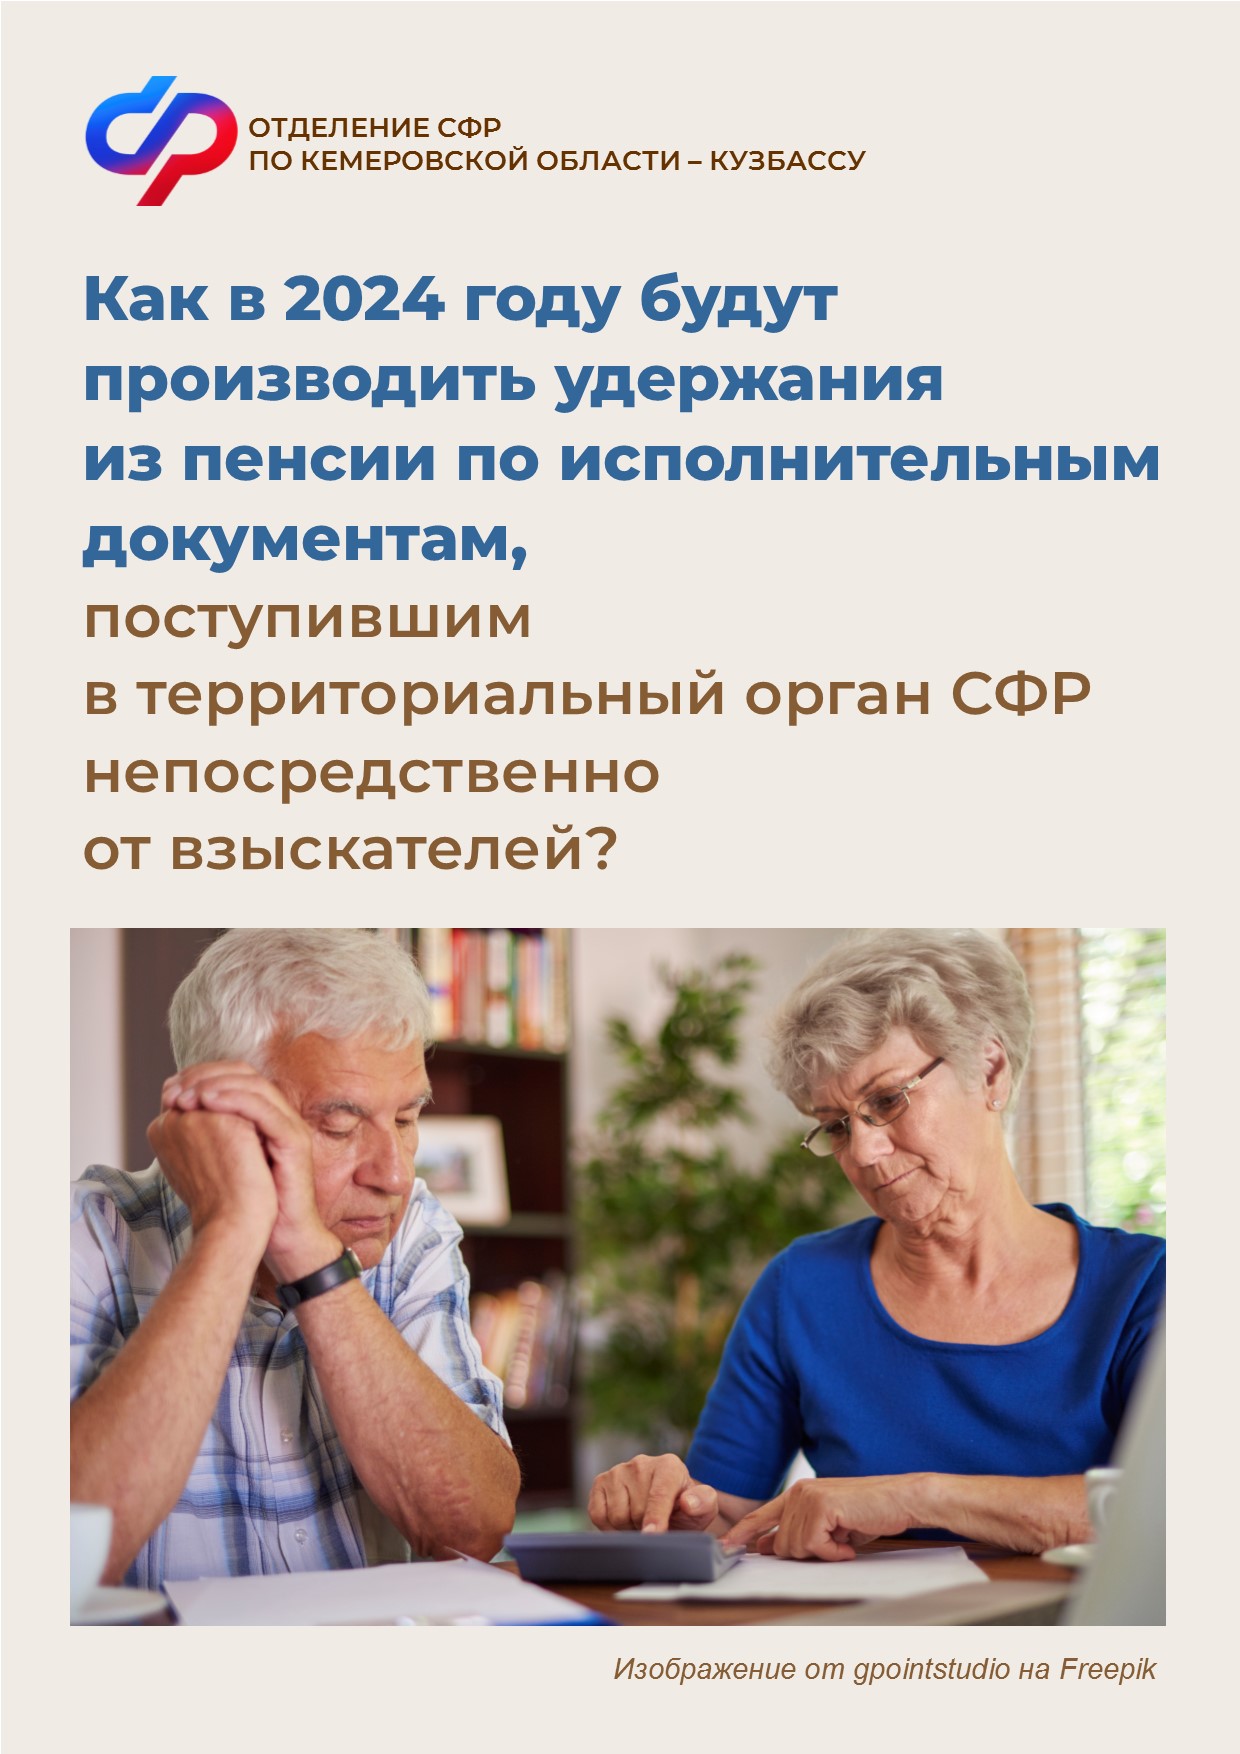 Как в 2024 году будут производить удержания из пенсии по исполнительным документам, поступившим в территориальный орган СФР непосредственно от взыскателей?